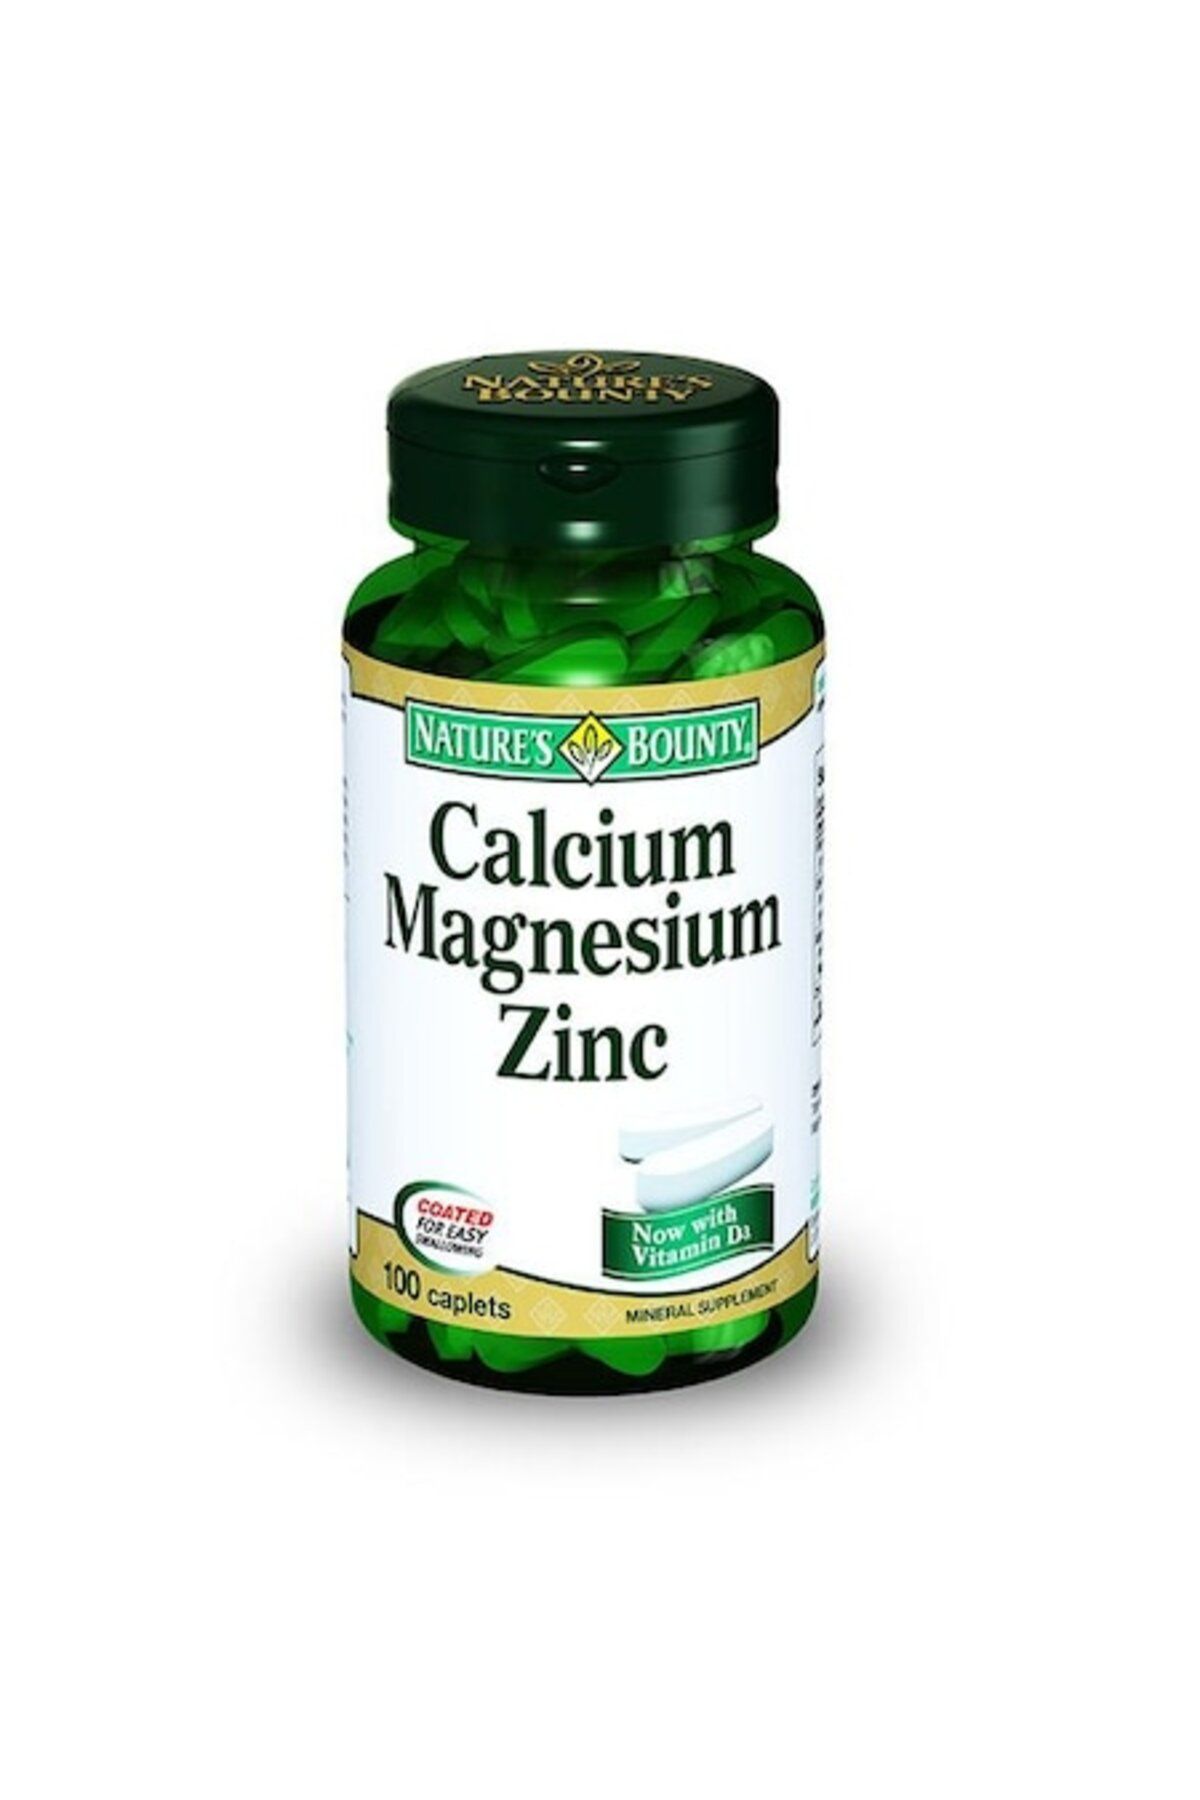 Natures Bounty Calcium Magnesium Zinc 100 Tablet